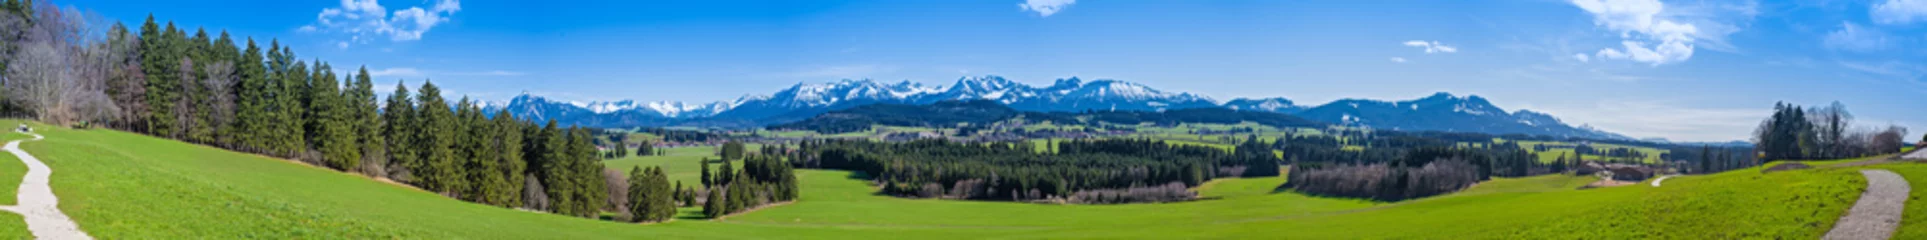 Deurstickers Wandelpad door de Allgäu met uitzicht op de Alpen - panorama in hoge resolutie © reichdernatur